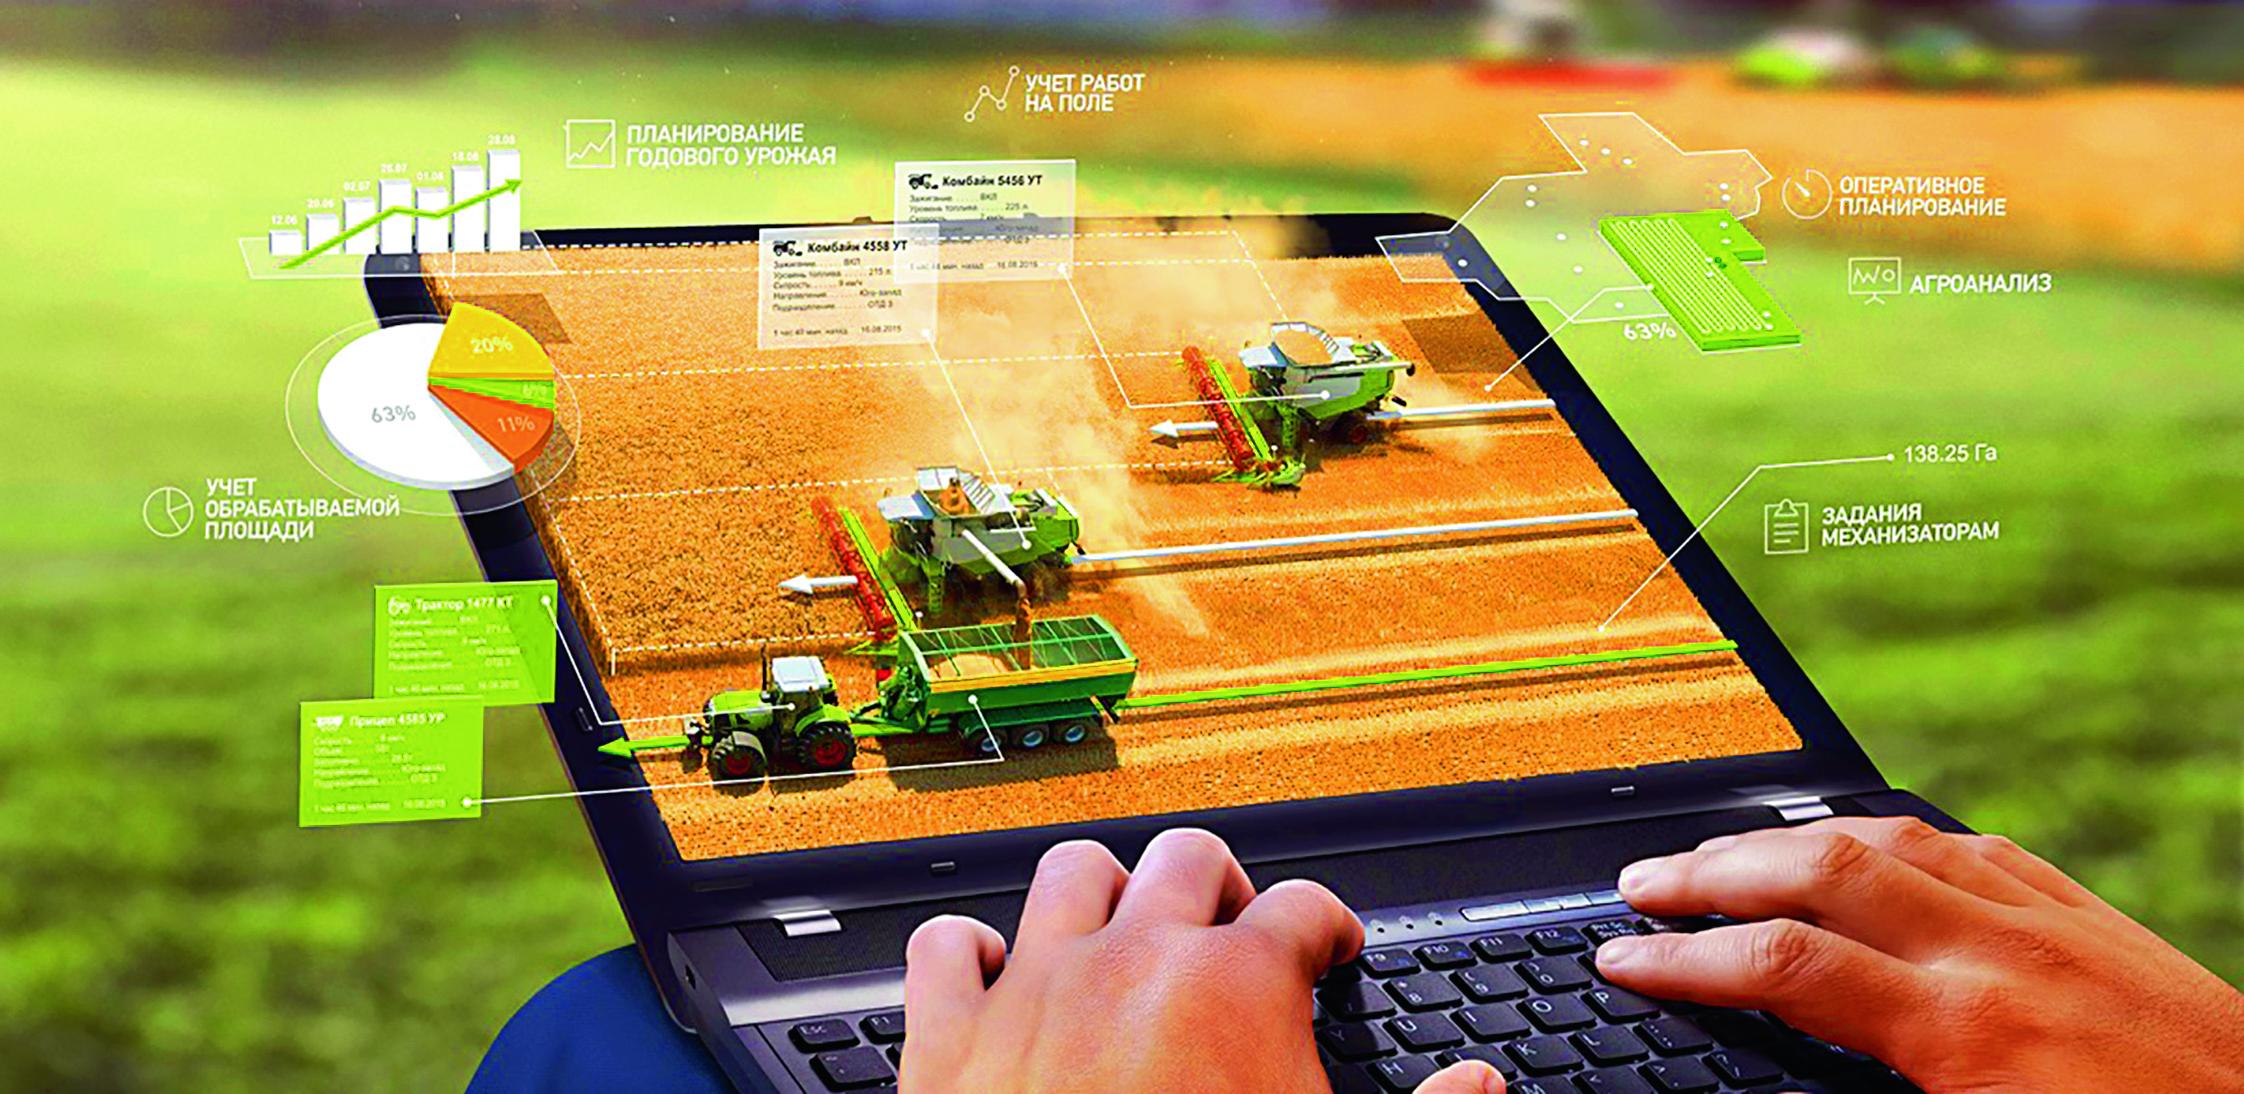 Приложение сх. Цифровые технологии в сельском хозяйстве. Информационные технологии в сельском хозяйстве. Инновации в сельском хозяйстве. Цифровизация сельского хозяйства.